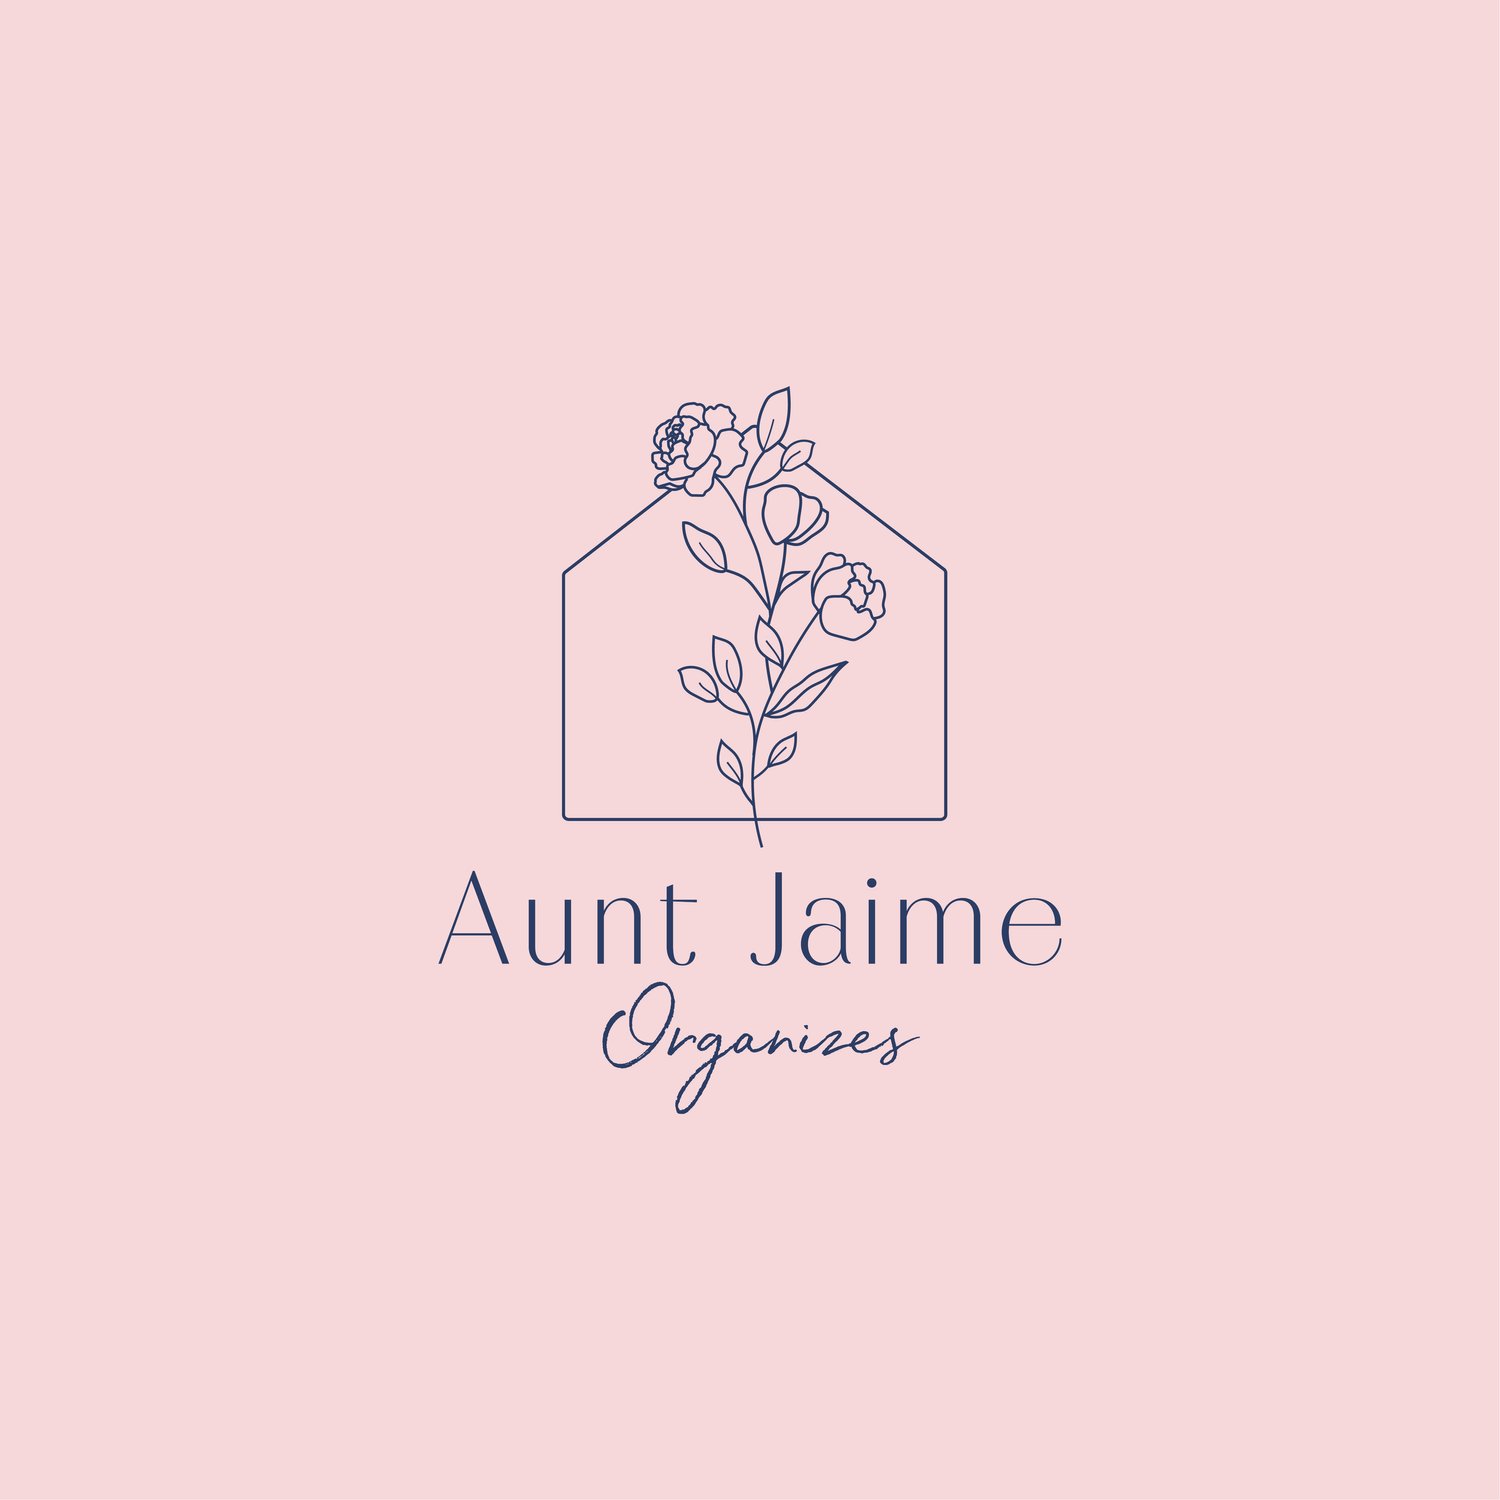 Aunt Jaime Organizes